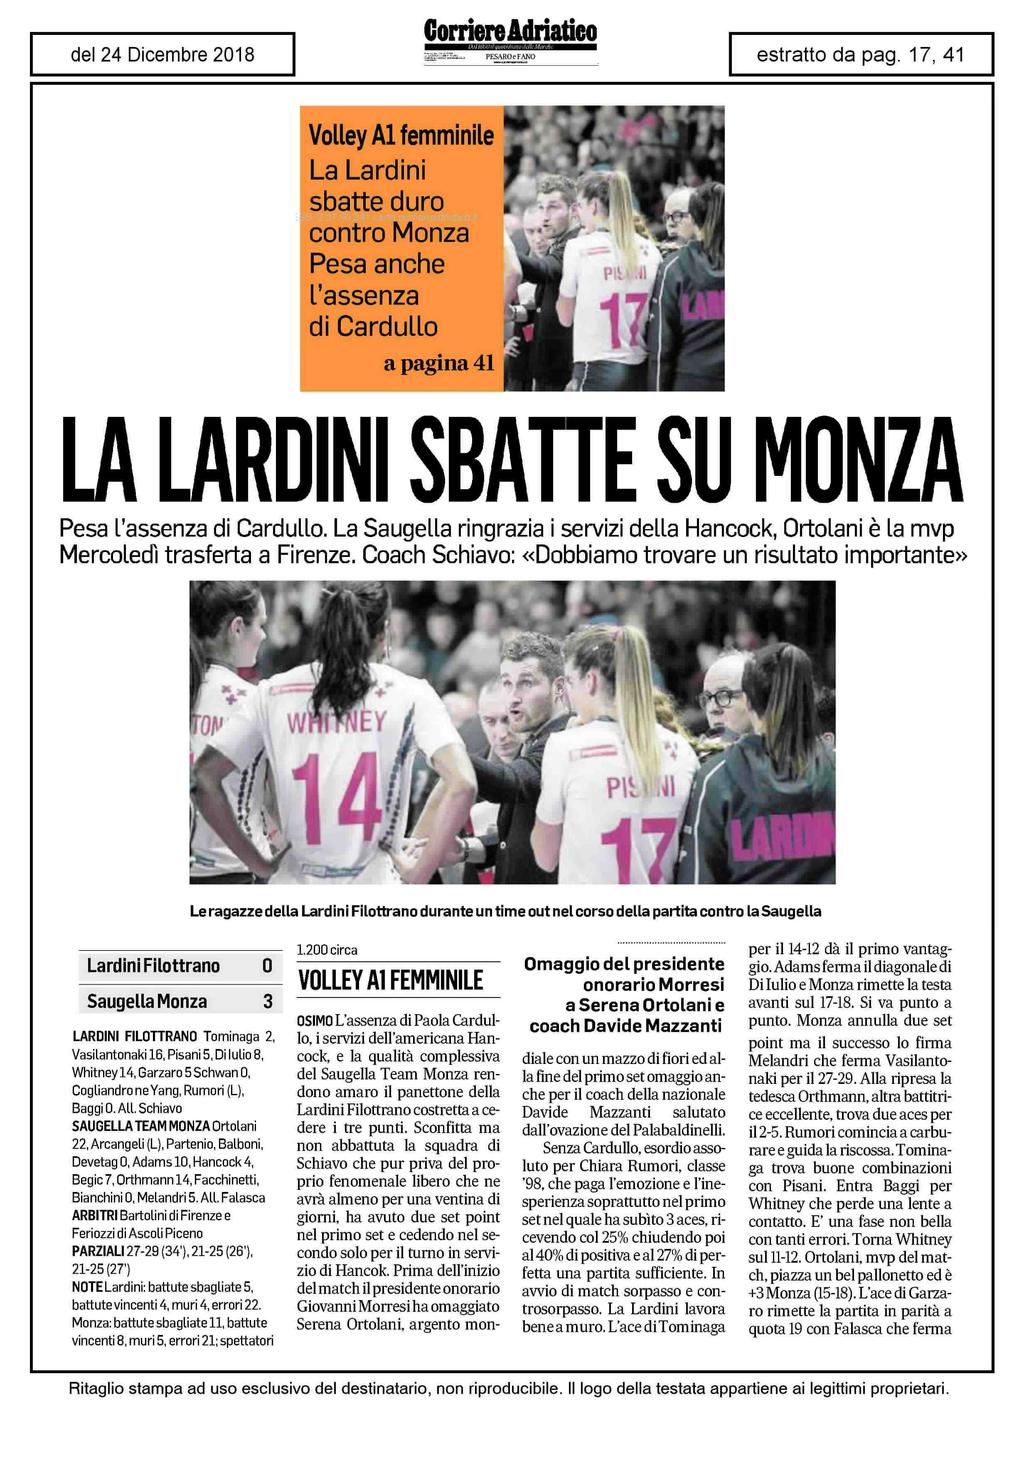 Volley Al femminile La Lardini sbatte duro contro Monza Pesa anche l'assenza di Cardullo a pagina 1 LA LARDINI SBATTE SU MONZA Pesa l'assenza di Cardullo.